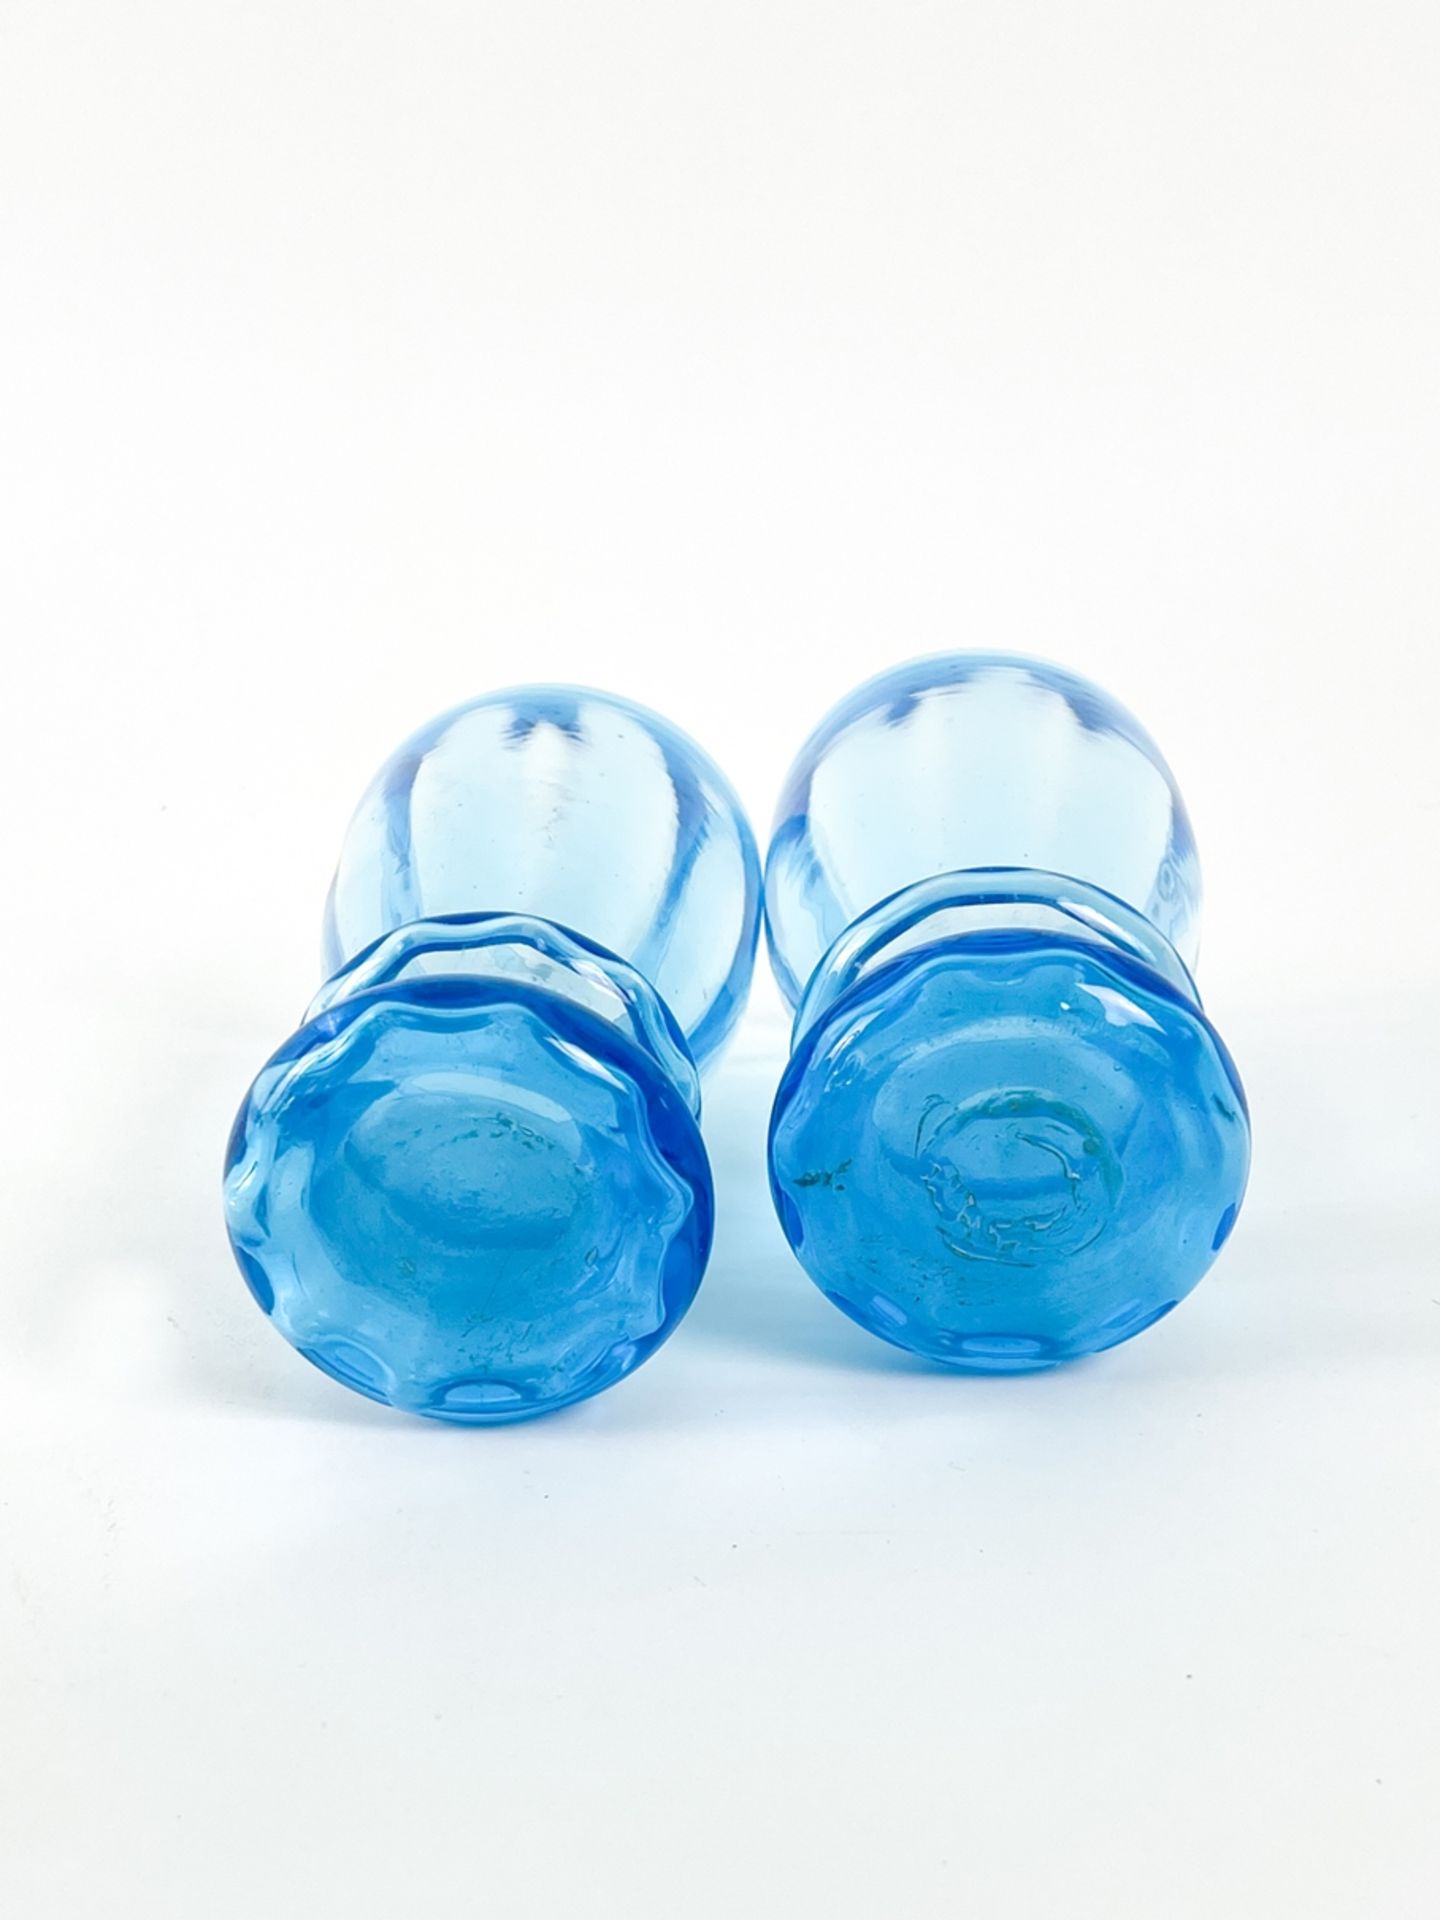 Blauer Glaskrug mit zwei Bechern  - Bild 7 aus 7